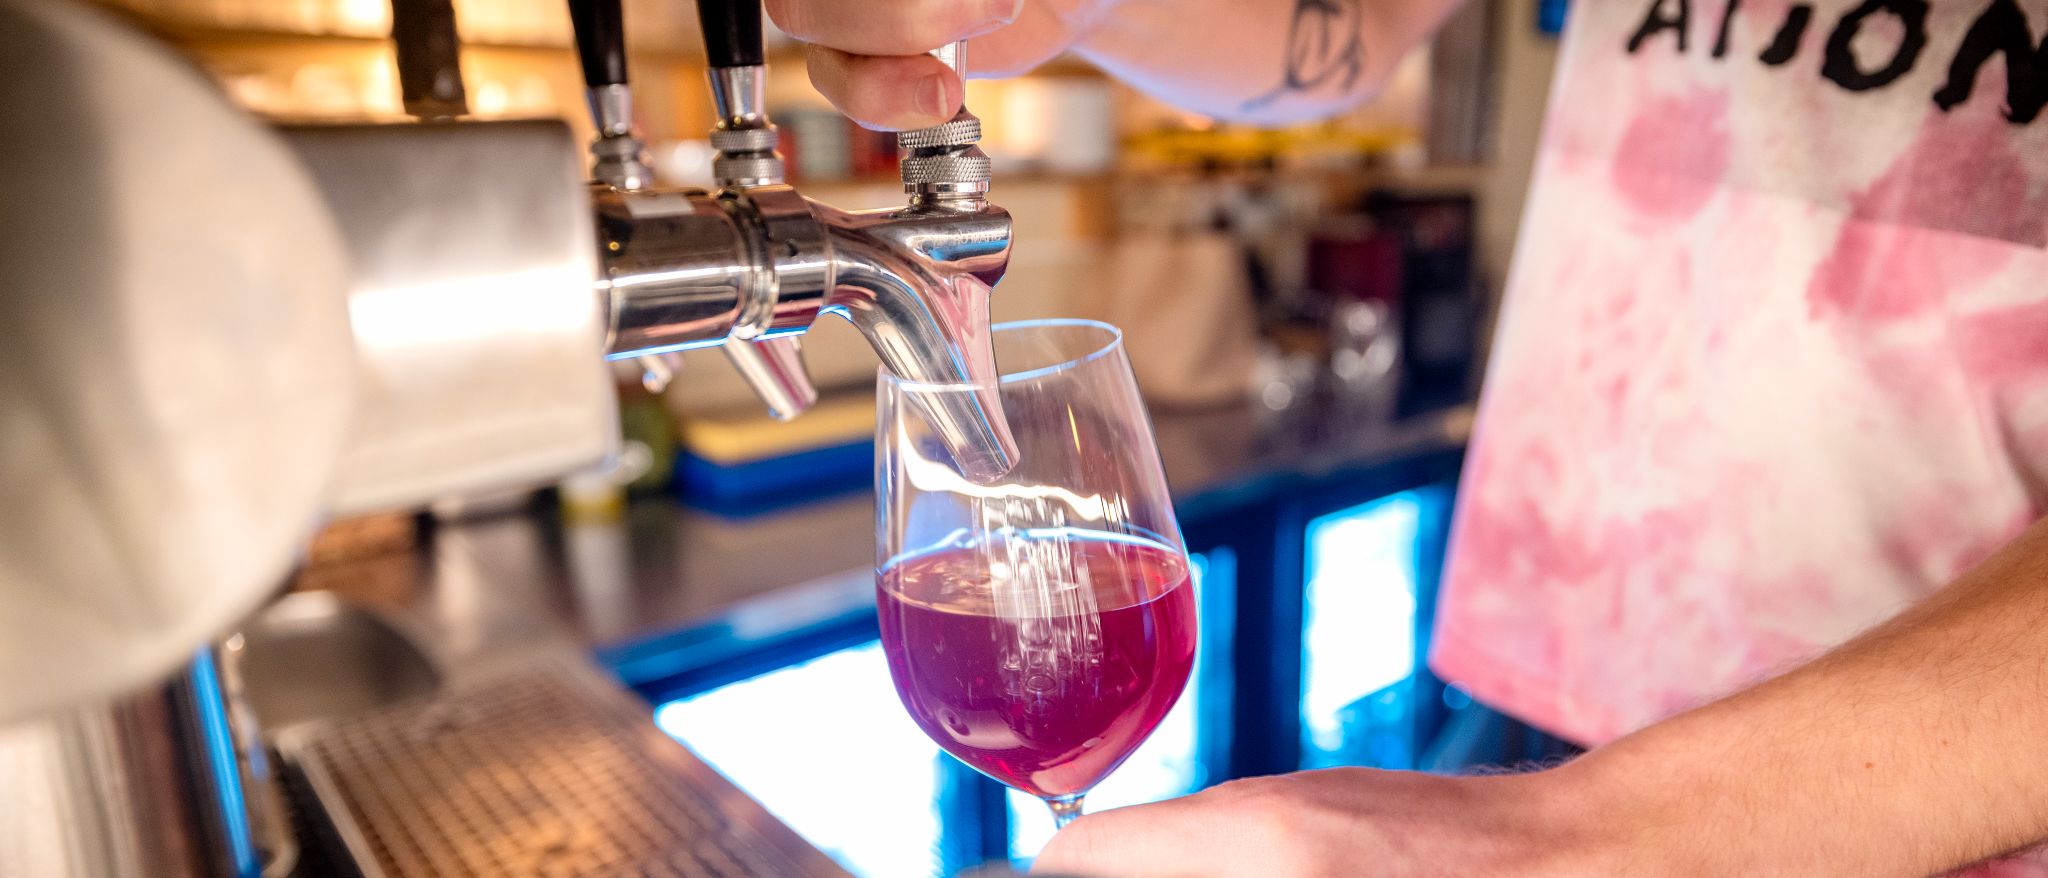 Vinimportøren ble overbevist i Malmö, nå sprer trenden seg på Oslos barer